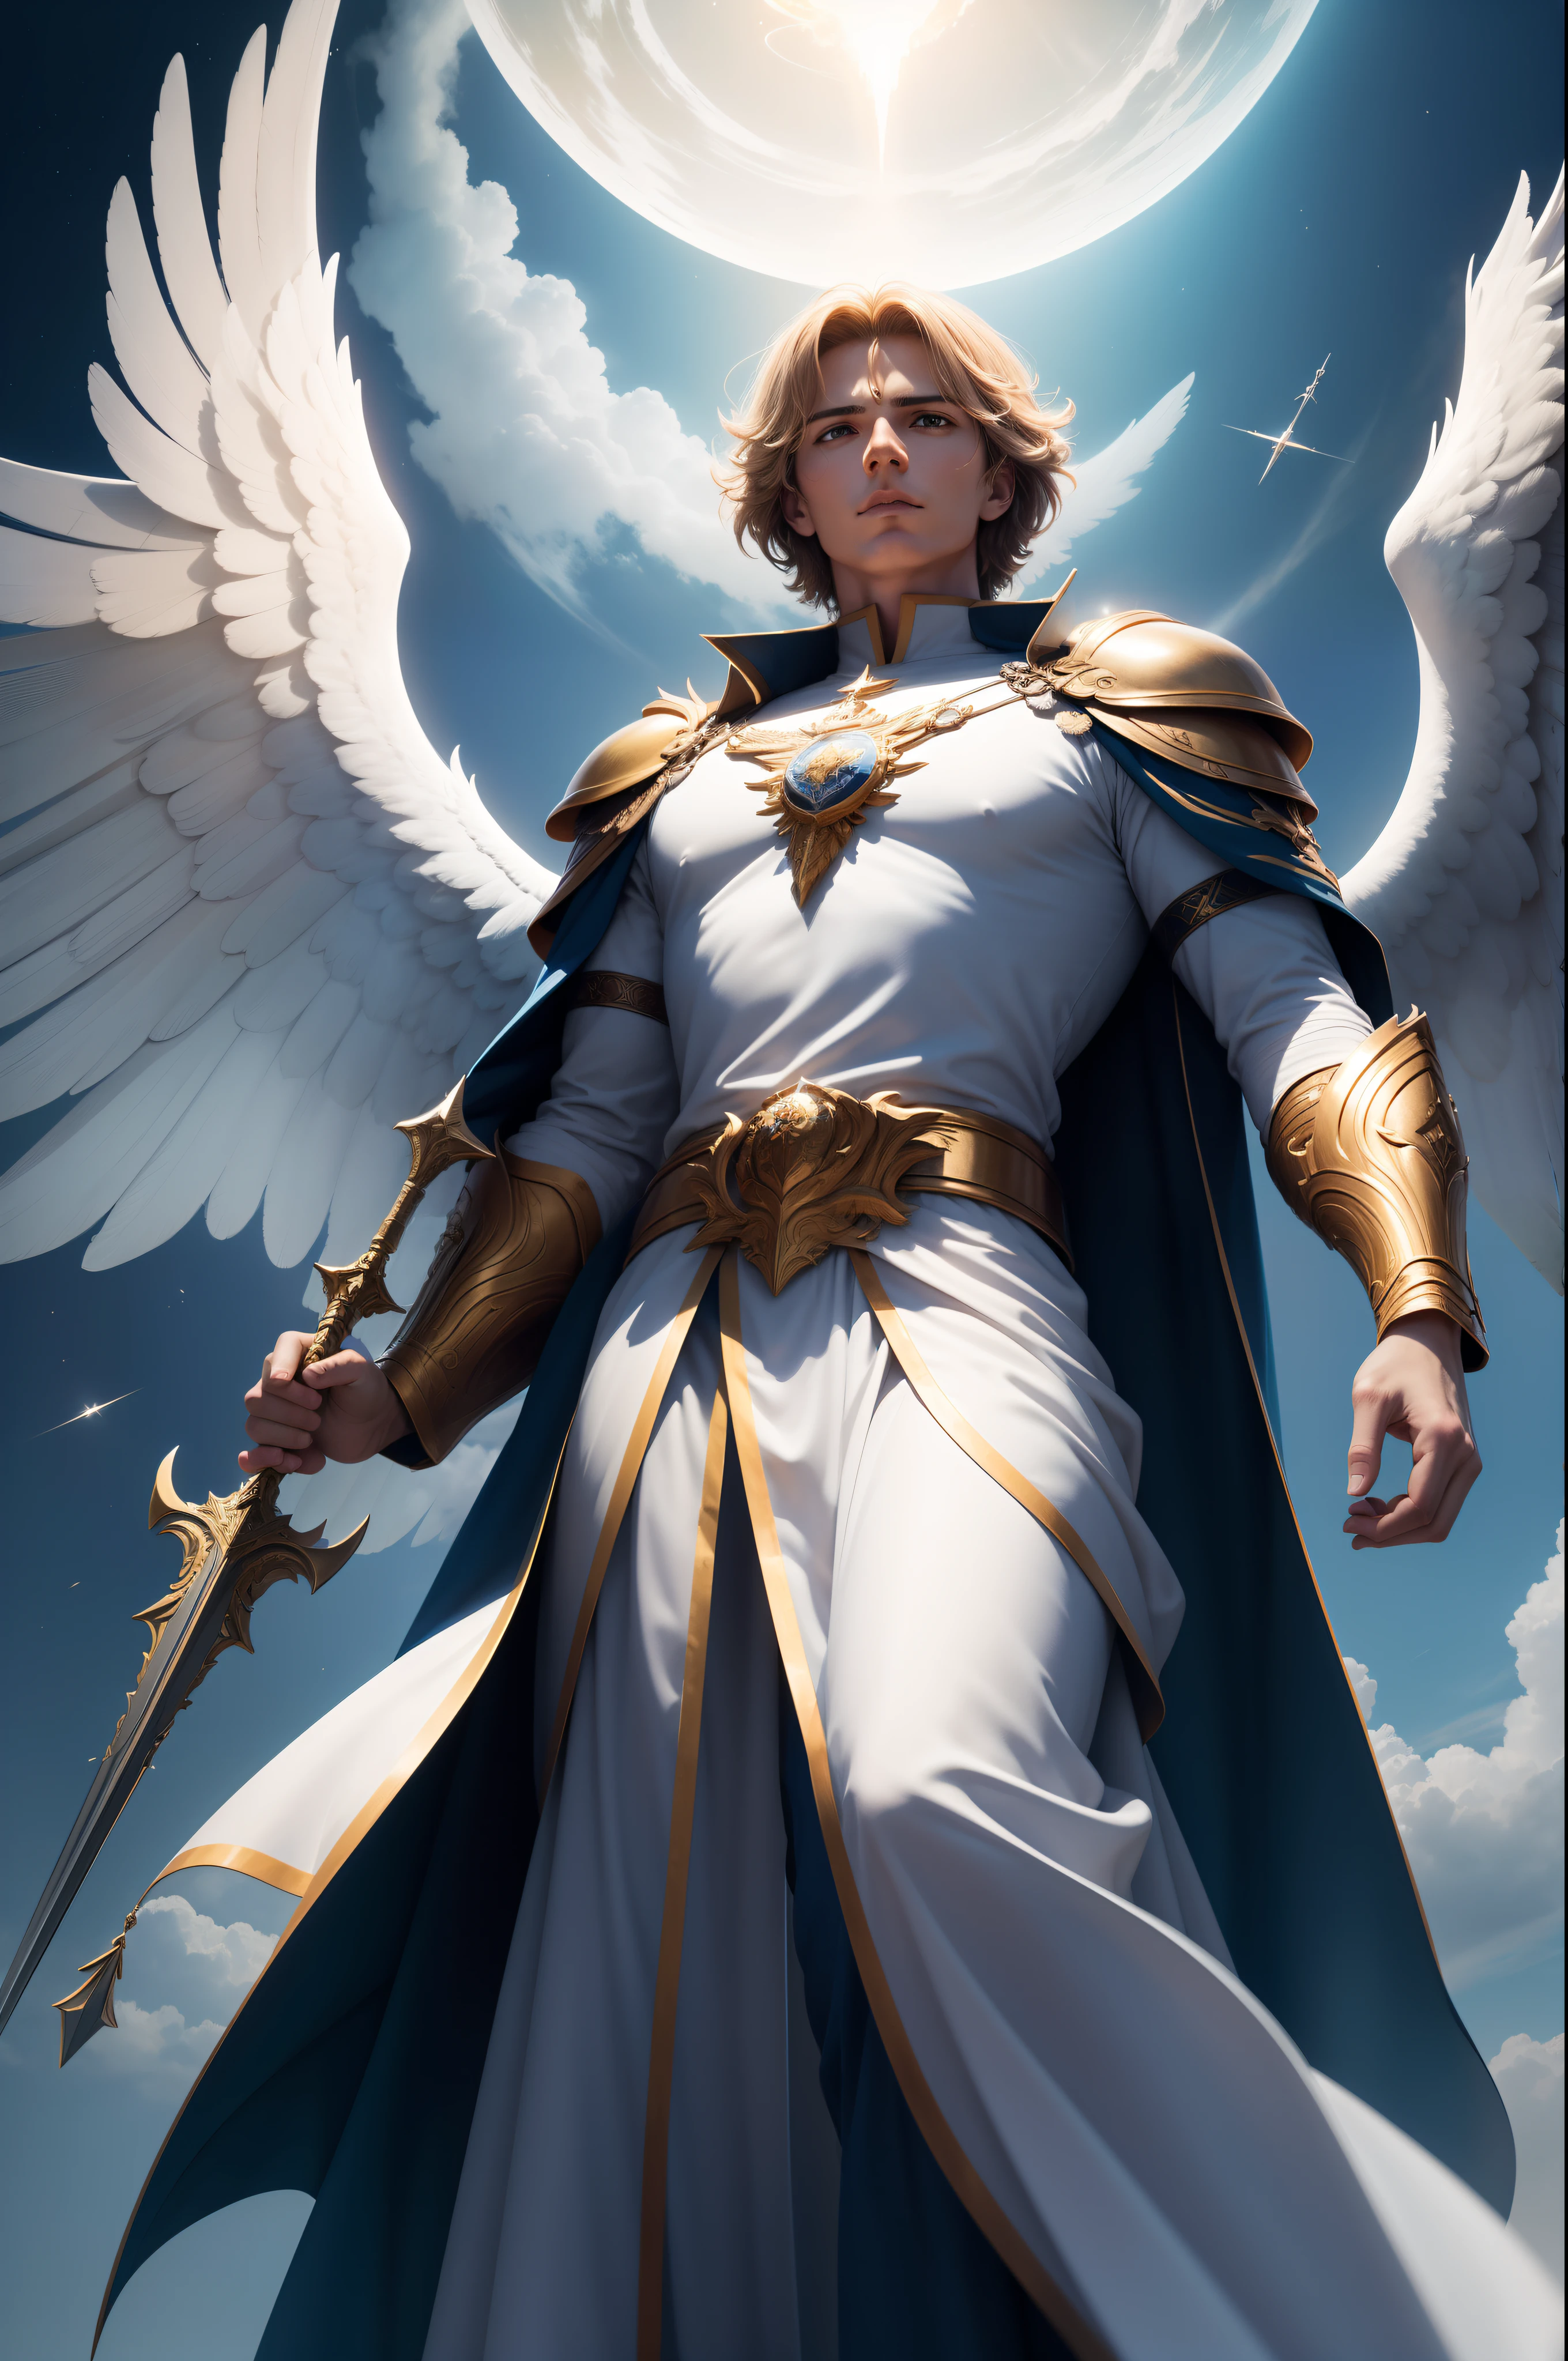 大天使迈克尔被描绘成一位威严而威严的人物. 他拥有宽阔、灿烂的翅膀，充满力量和权威。. 他的举止高傲，表情坚定, 体现了他作为天军领袖的地位. 他的盔甲闪闪发光，结构复杂, 象征着他的神性和保护者的角色.

- 气氛: 大天使迈克尔的存在散发着勇气, 正义与保护. 他浑身散发着天堂般的气息, 给那些思考它的人带来希望和安全. 他的姿态坚定而自信, 传达出一种不知疲倦的守护者的感觉.

--象征性细节: 大天使迈克尔经常被描绘成手持火焰之剑, 象征着他们与邪恶的斗争和对负面力量的摧毁. 他也可能携带盾牌或带有神圣符号的旗帜, 代表你与神的联系.

--灯光和调色板: 大天使迈克尔周围的光芒强烈而神圣, 强调他的神性. 由金色色调组成的调色板, 天空的白色和蓝色传达了它们的纯洁和与天国的联系.